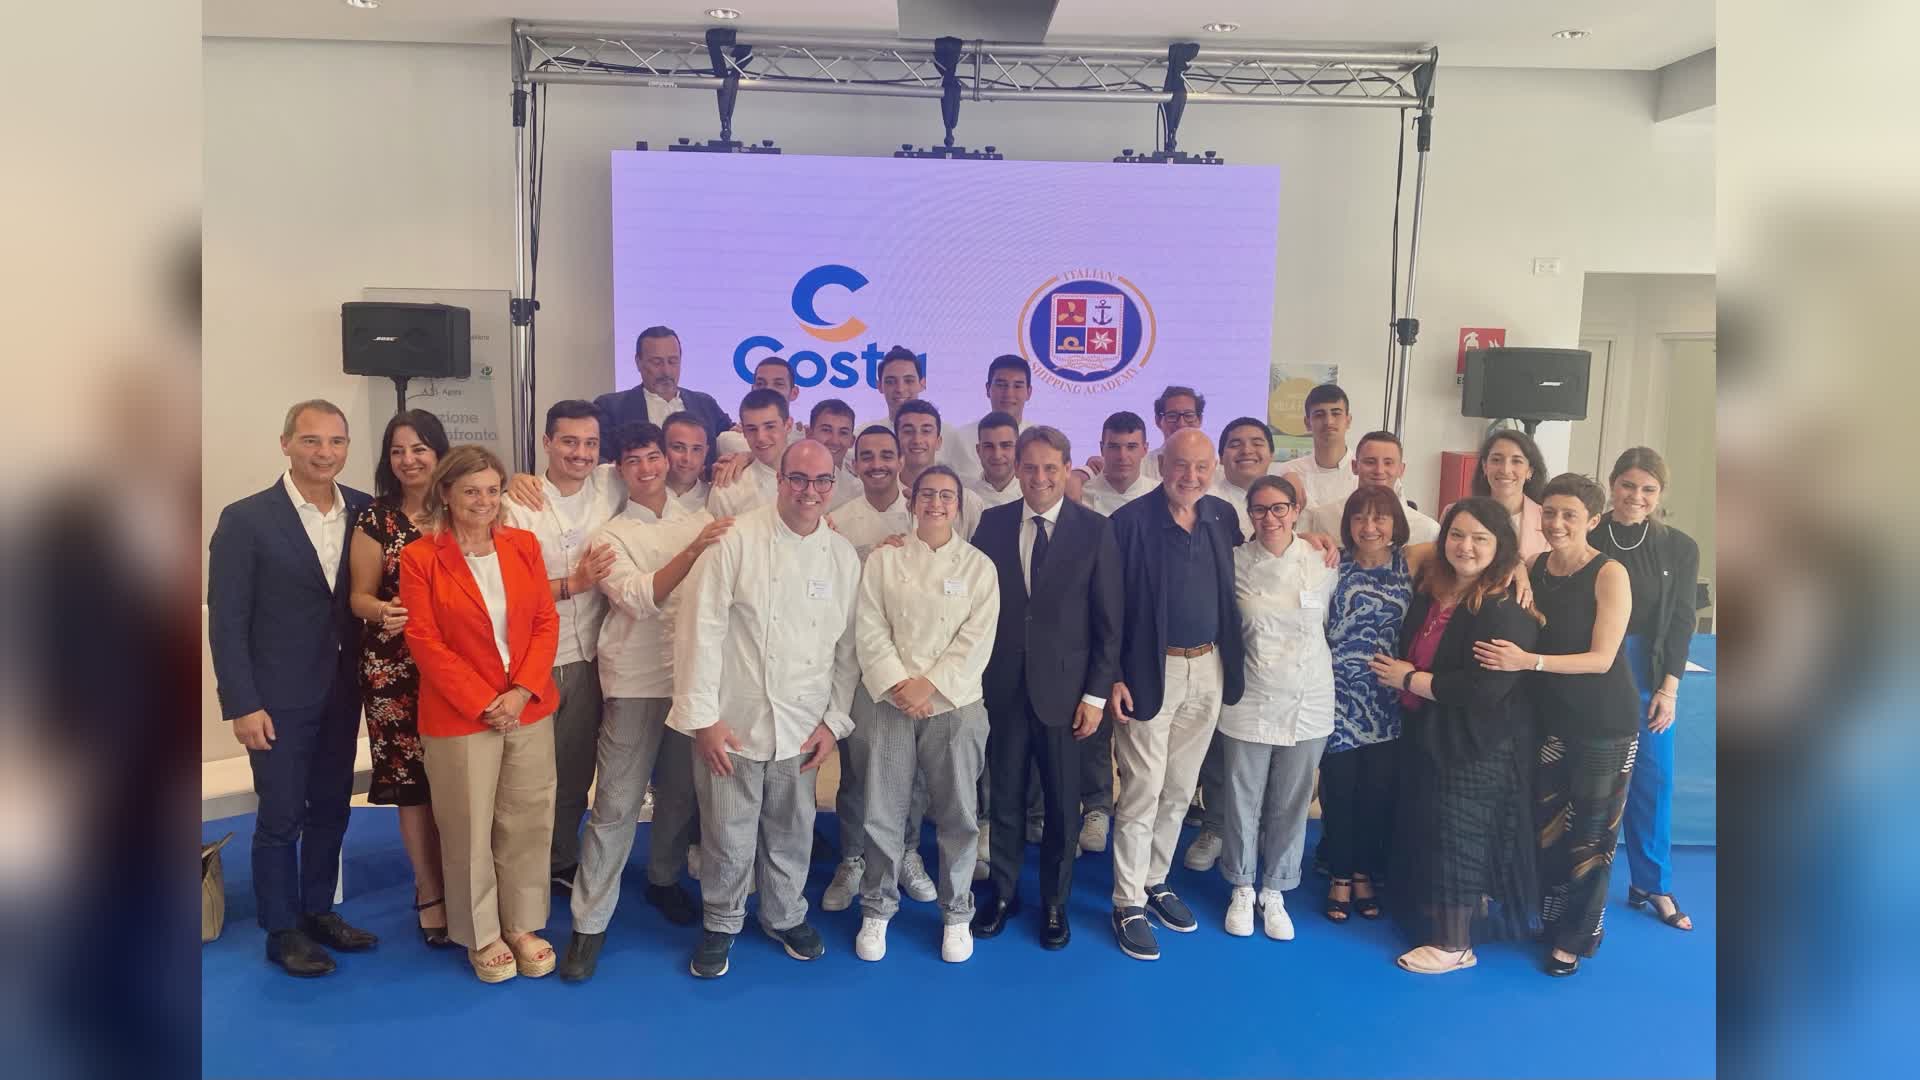 Costa Crociere, consegnati ad Arenzano i diplomi ai 19 allievi del corso ITS “Cuoco di Bordo”